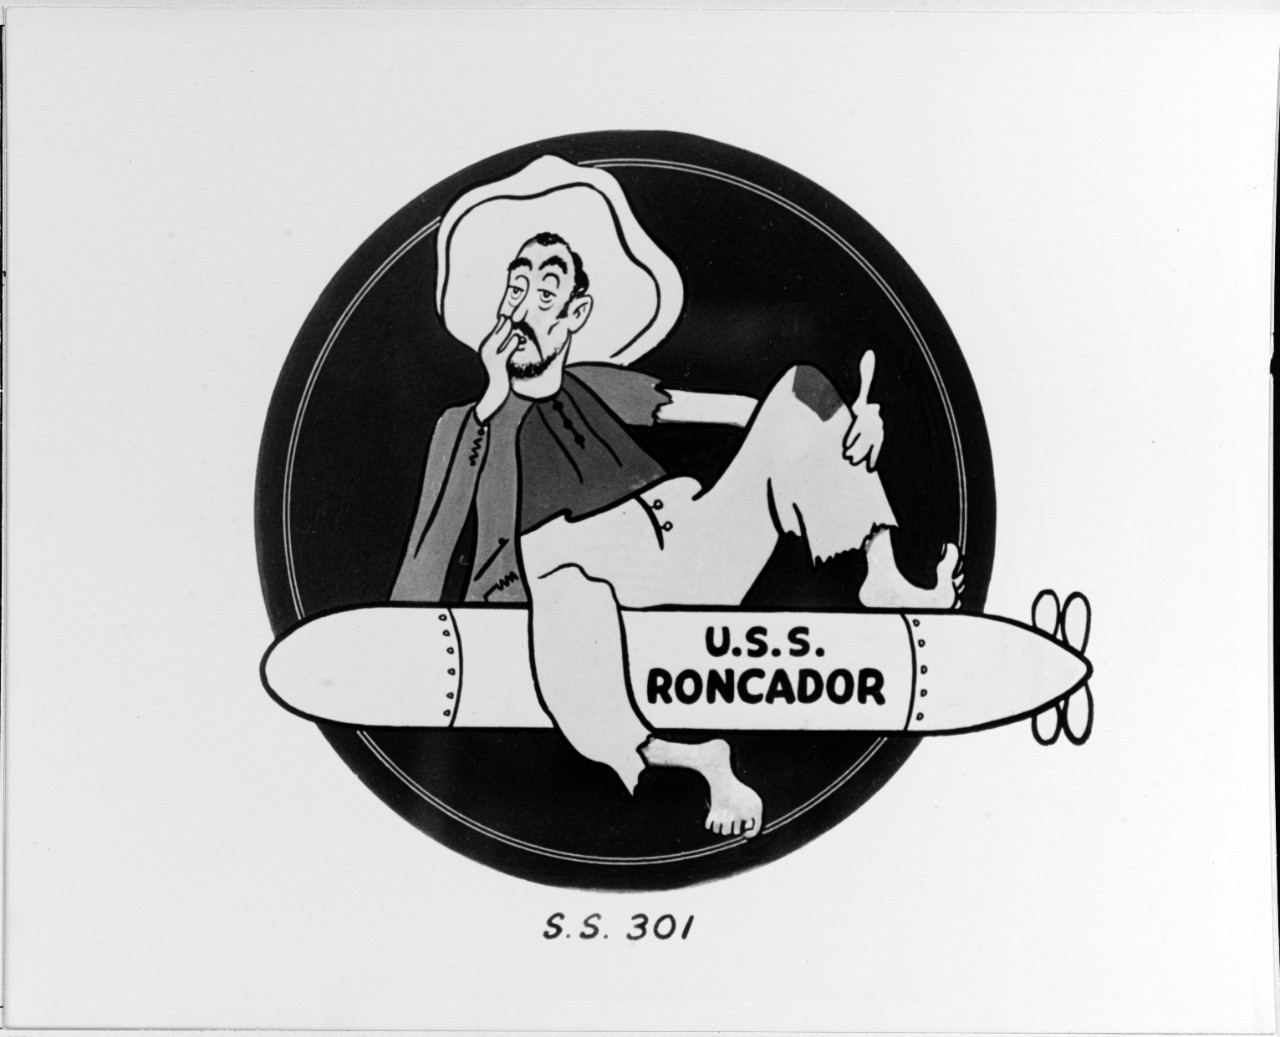 Insignia:  USS RONCADOR (SS-301)